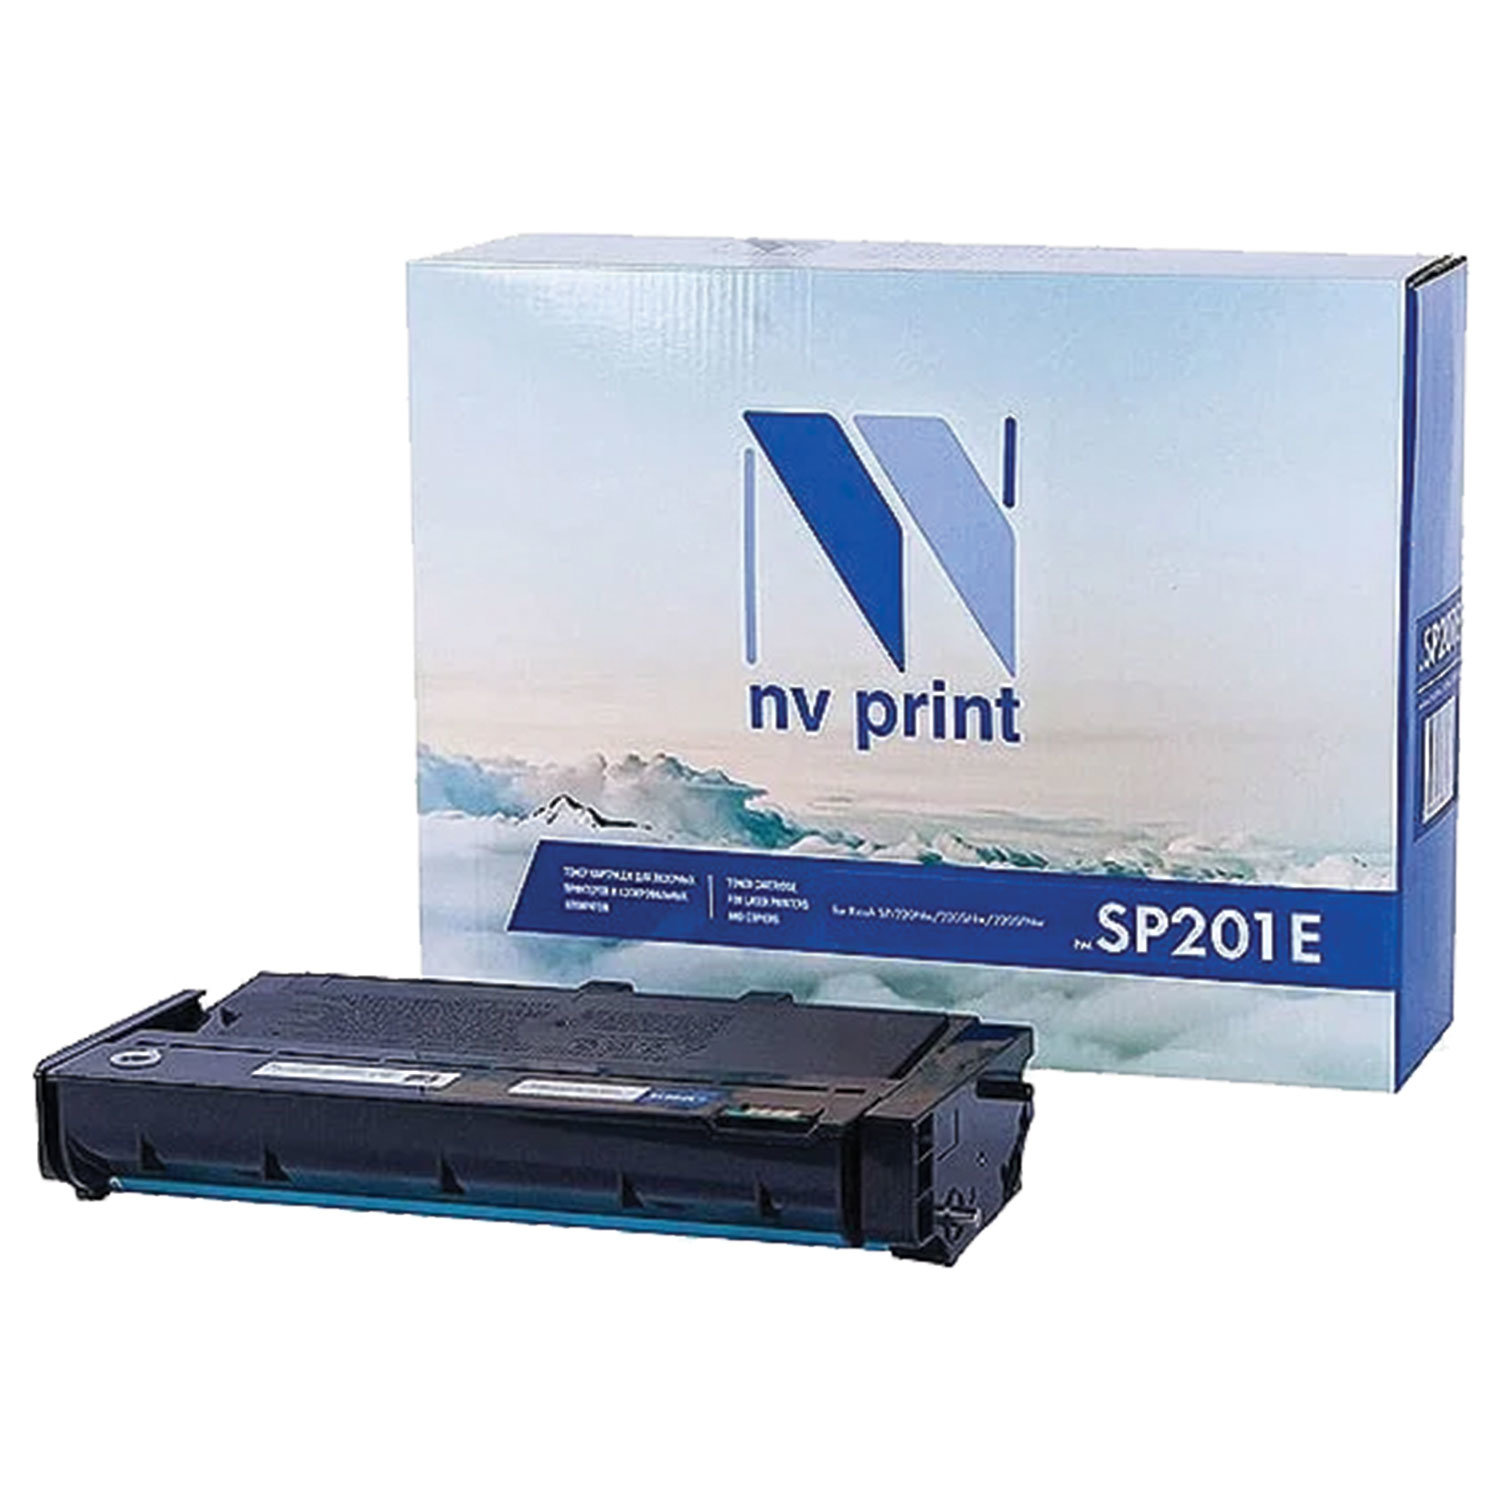  NV PRINT NV-SP201E